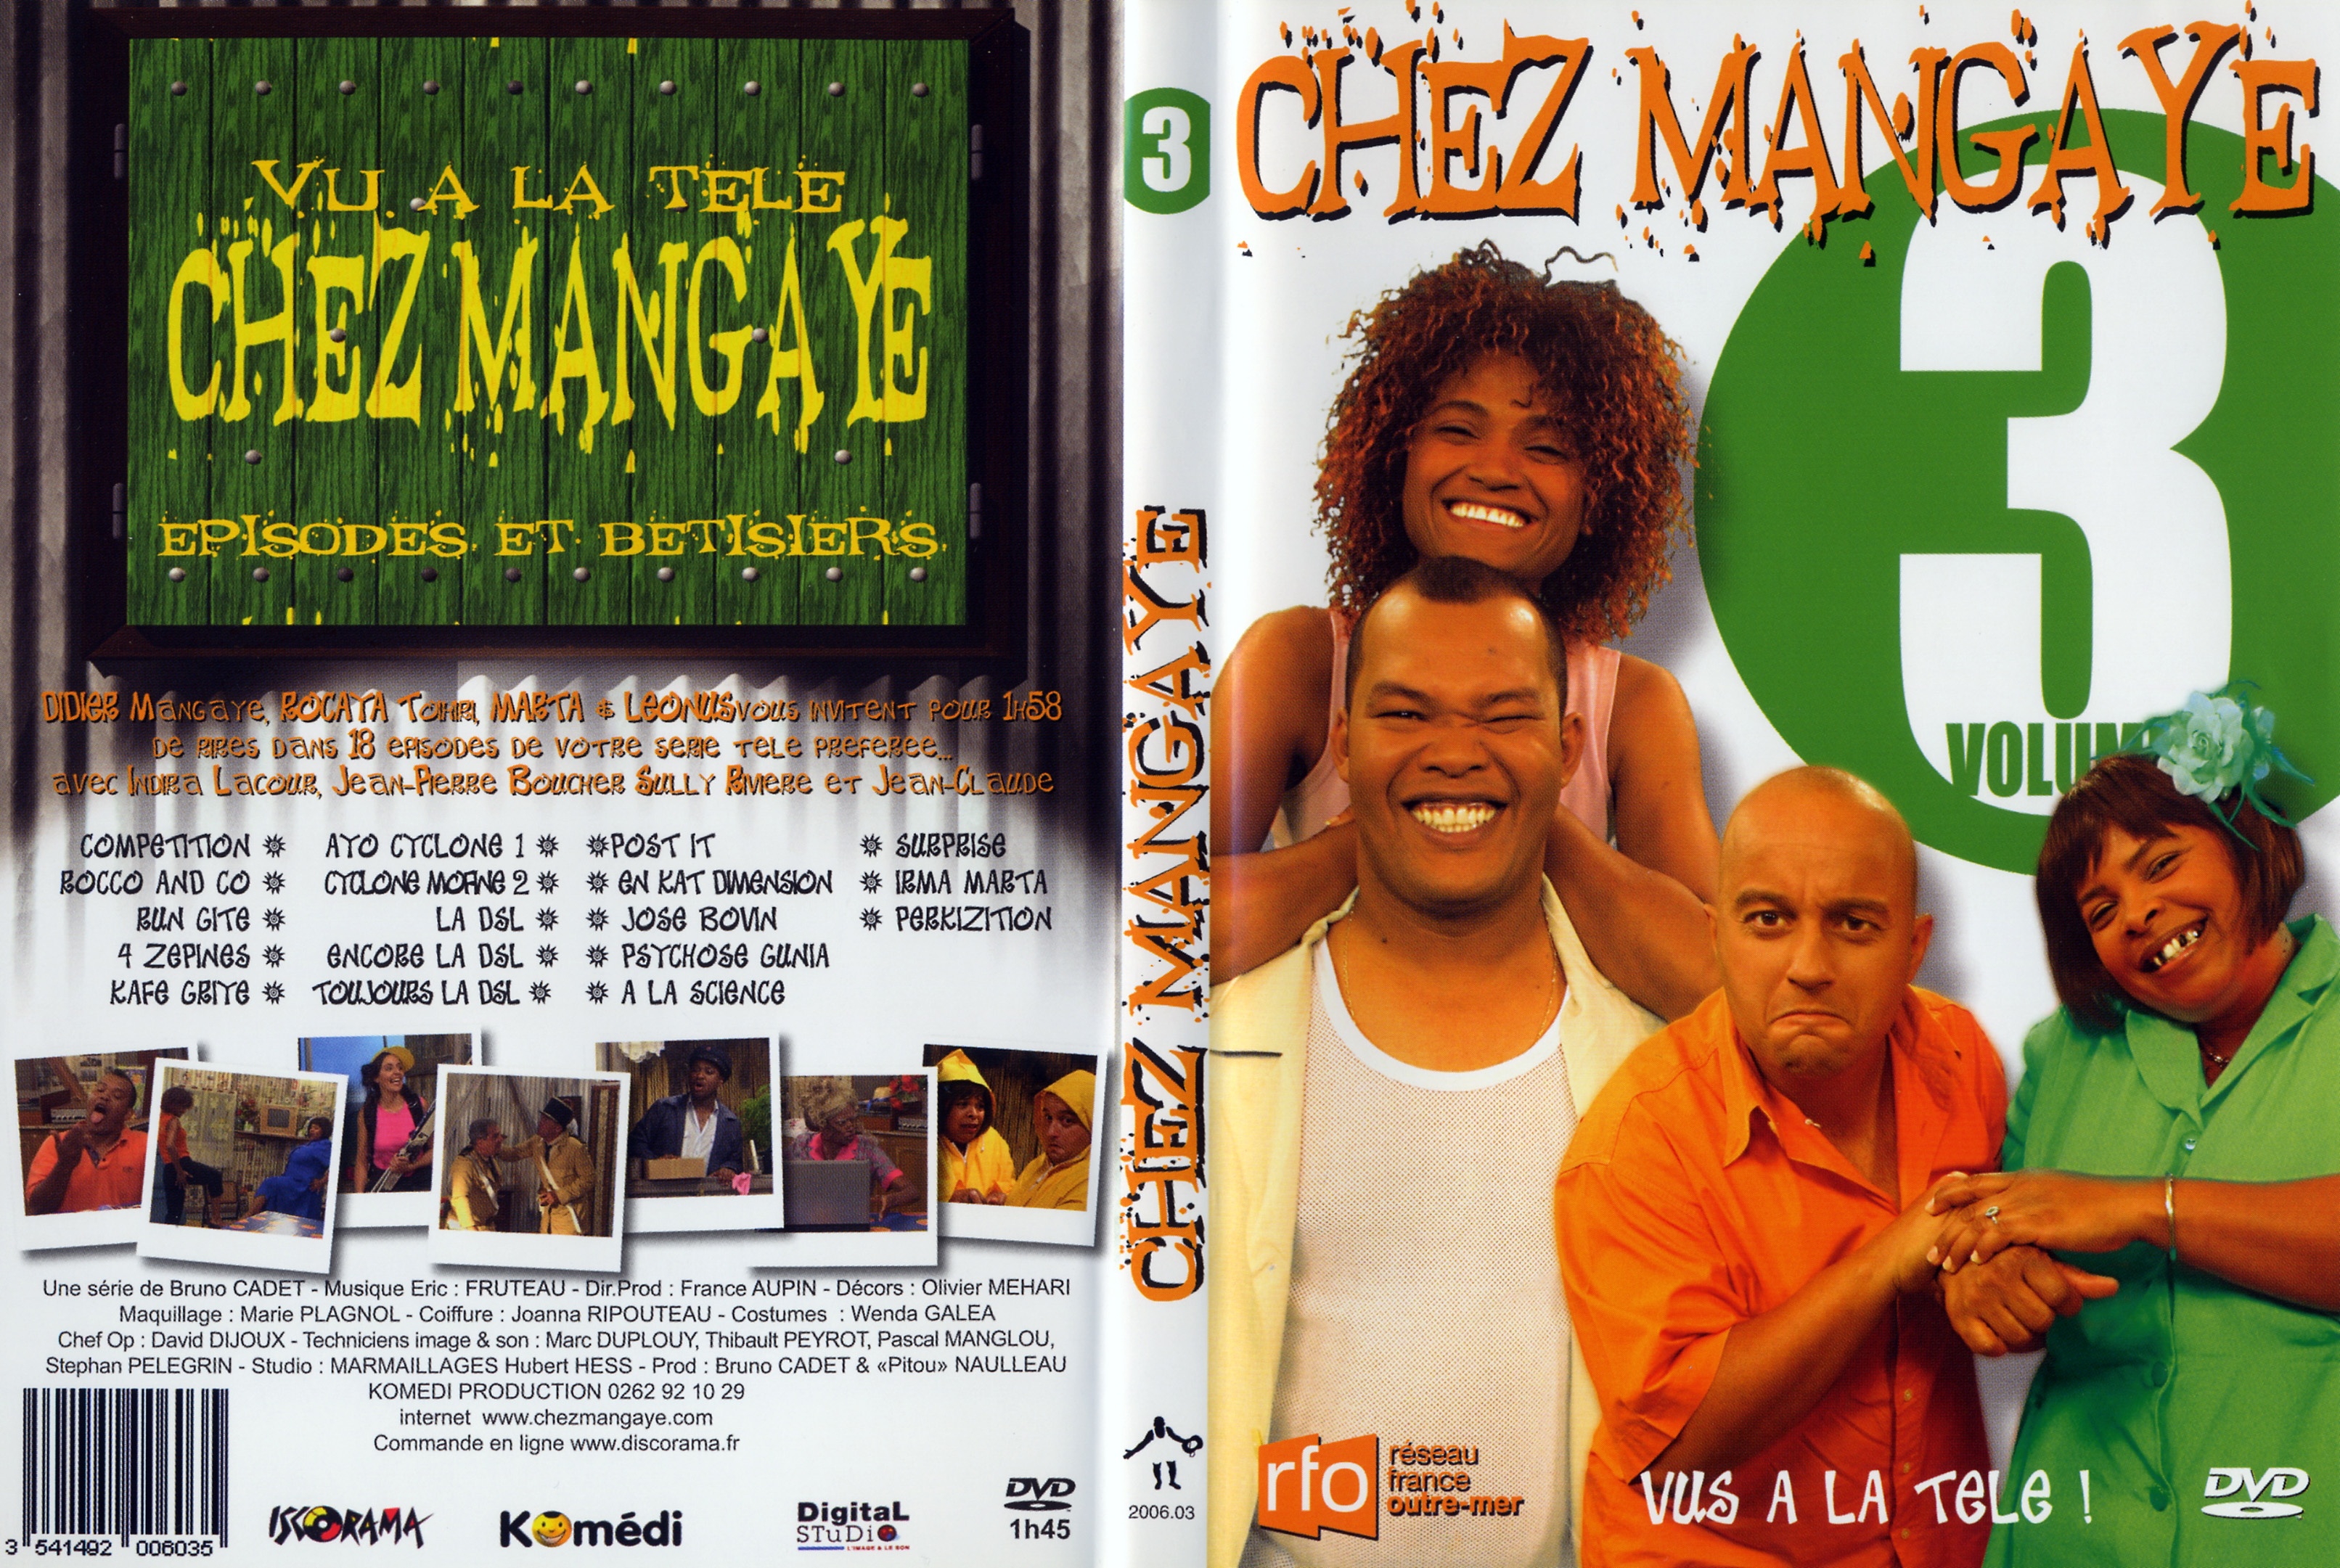 Jaquette DVD Chez mangaye vol 3